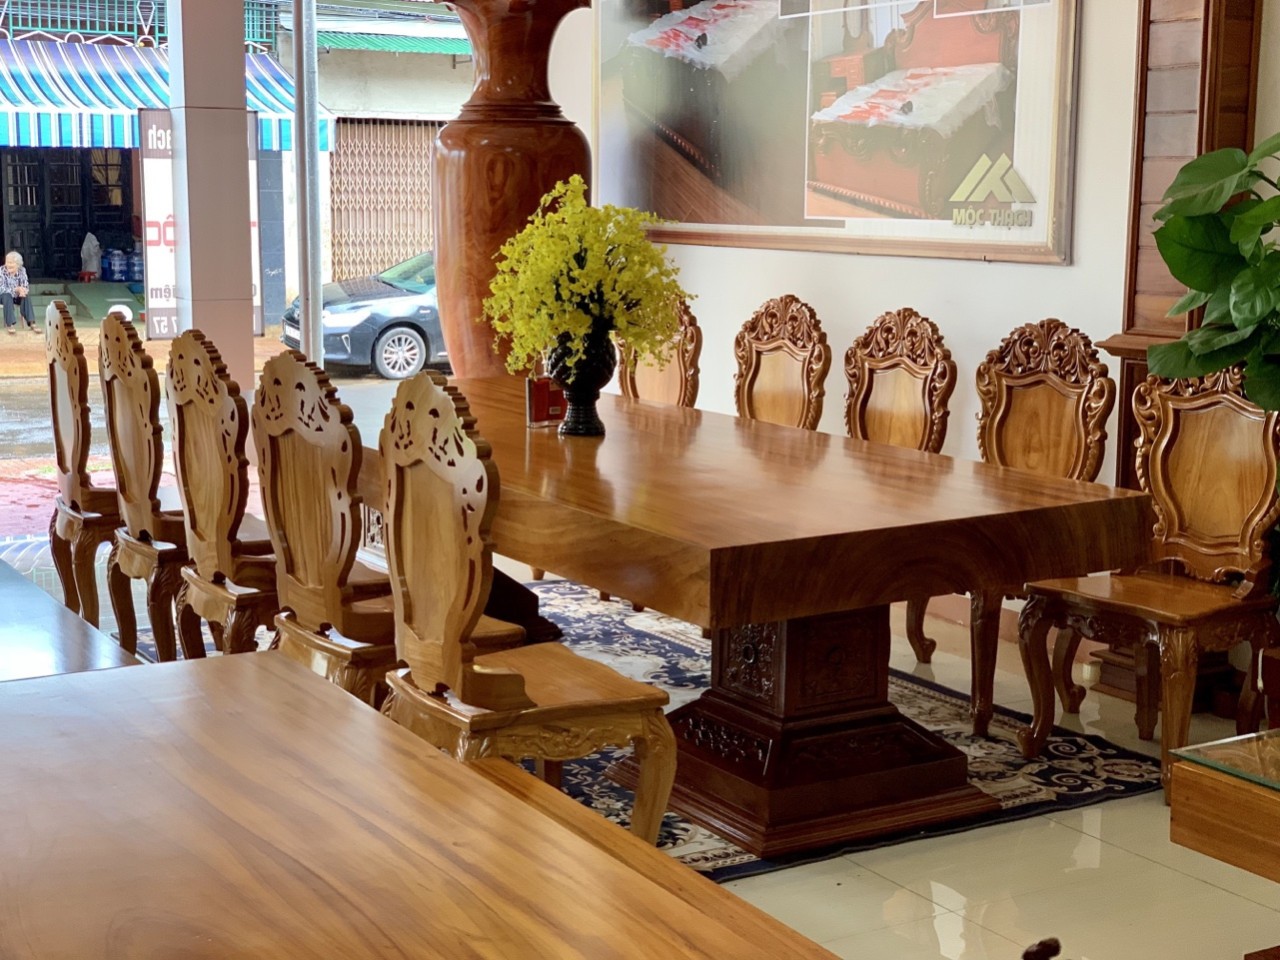 Mặt bàn gỗ nguyên khối chân chạm khắc, cùng ghế gỗ Louis